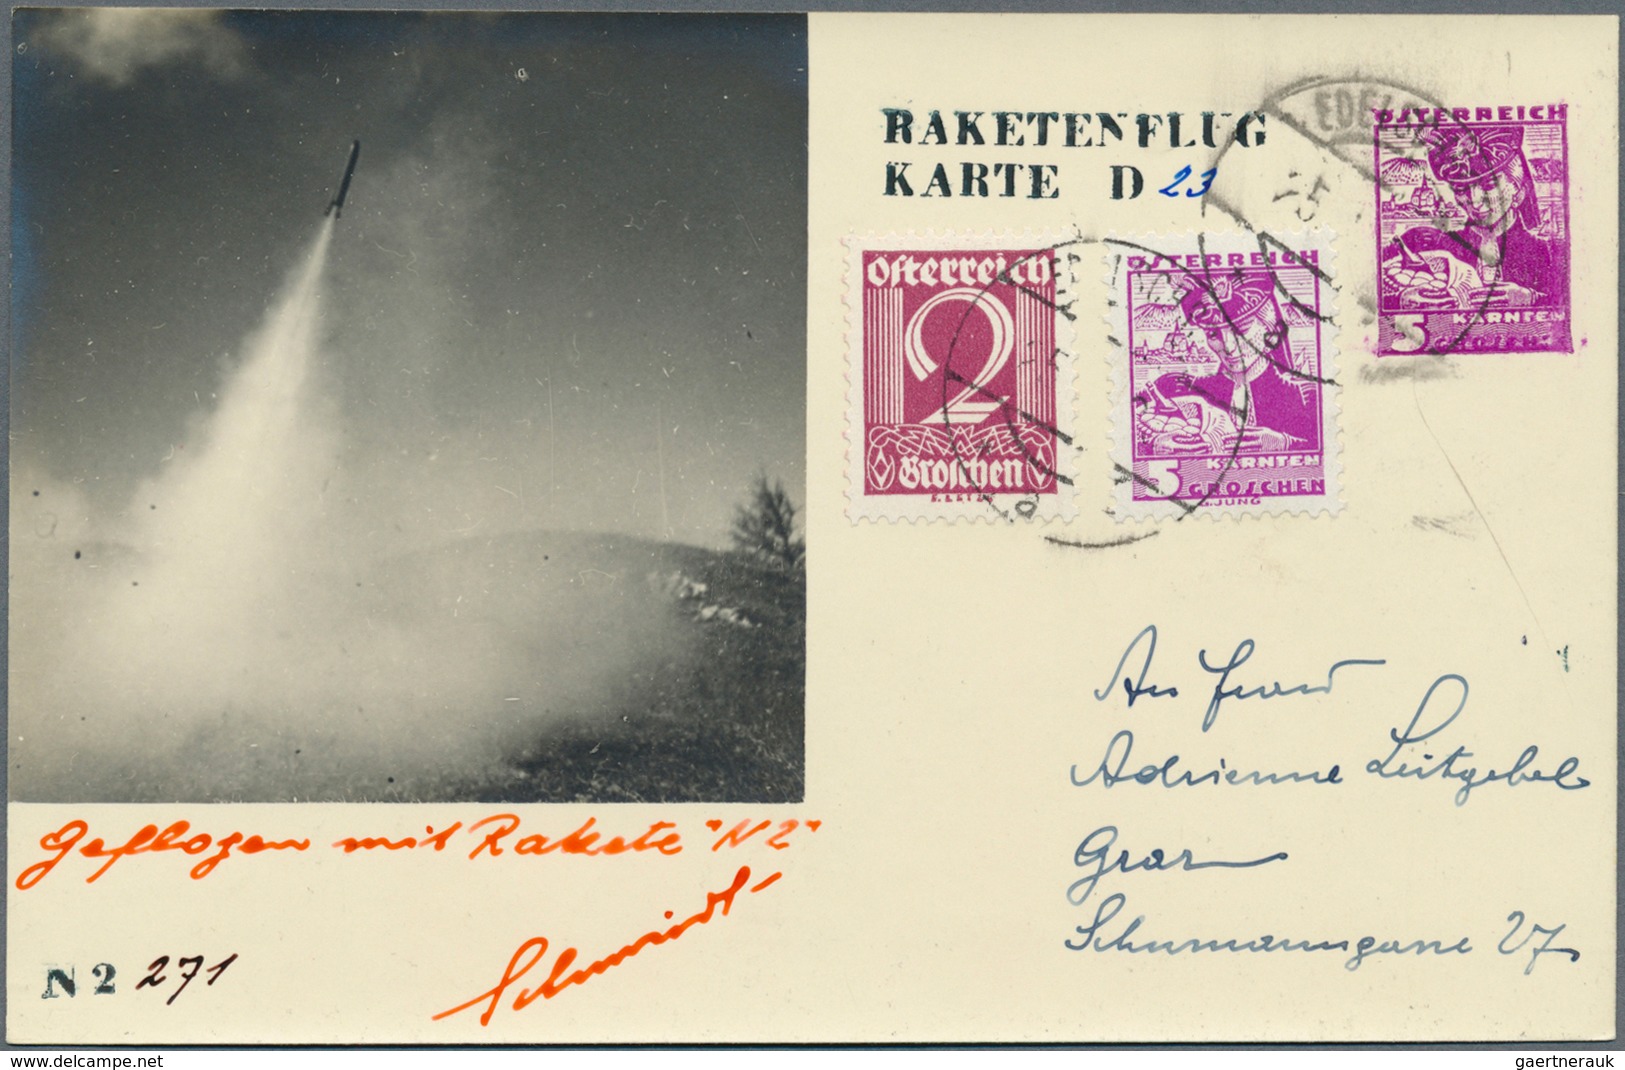 Raketenpost: 1935, Österreich: Schmiedl, Notverordnungs-Rakete N2, komplette Serie mit 6 verschieden